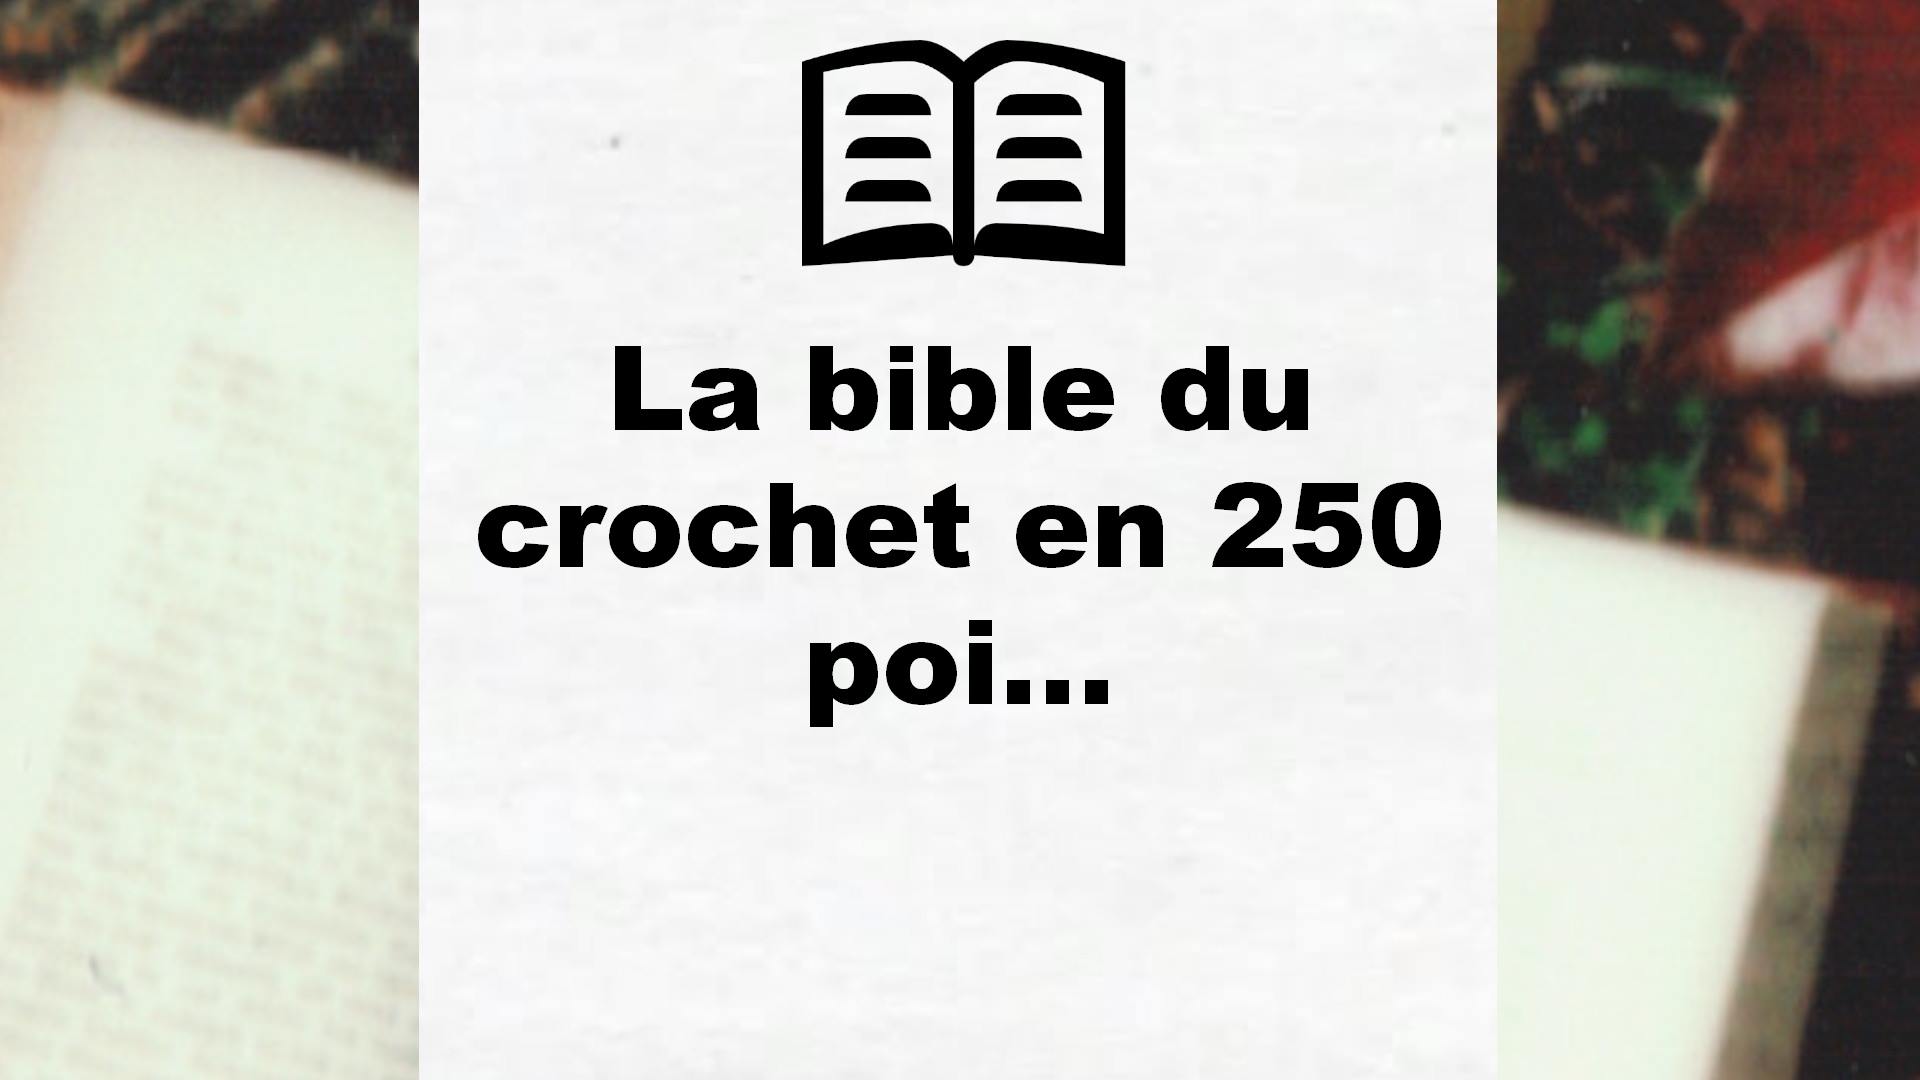 La bible du crochet en 250 poi… – Critique